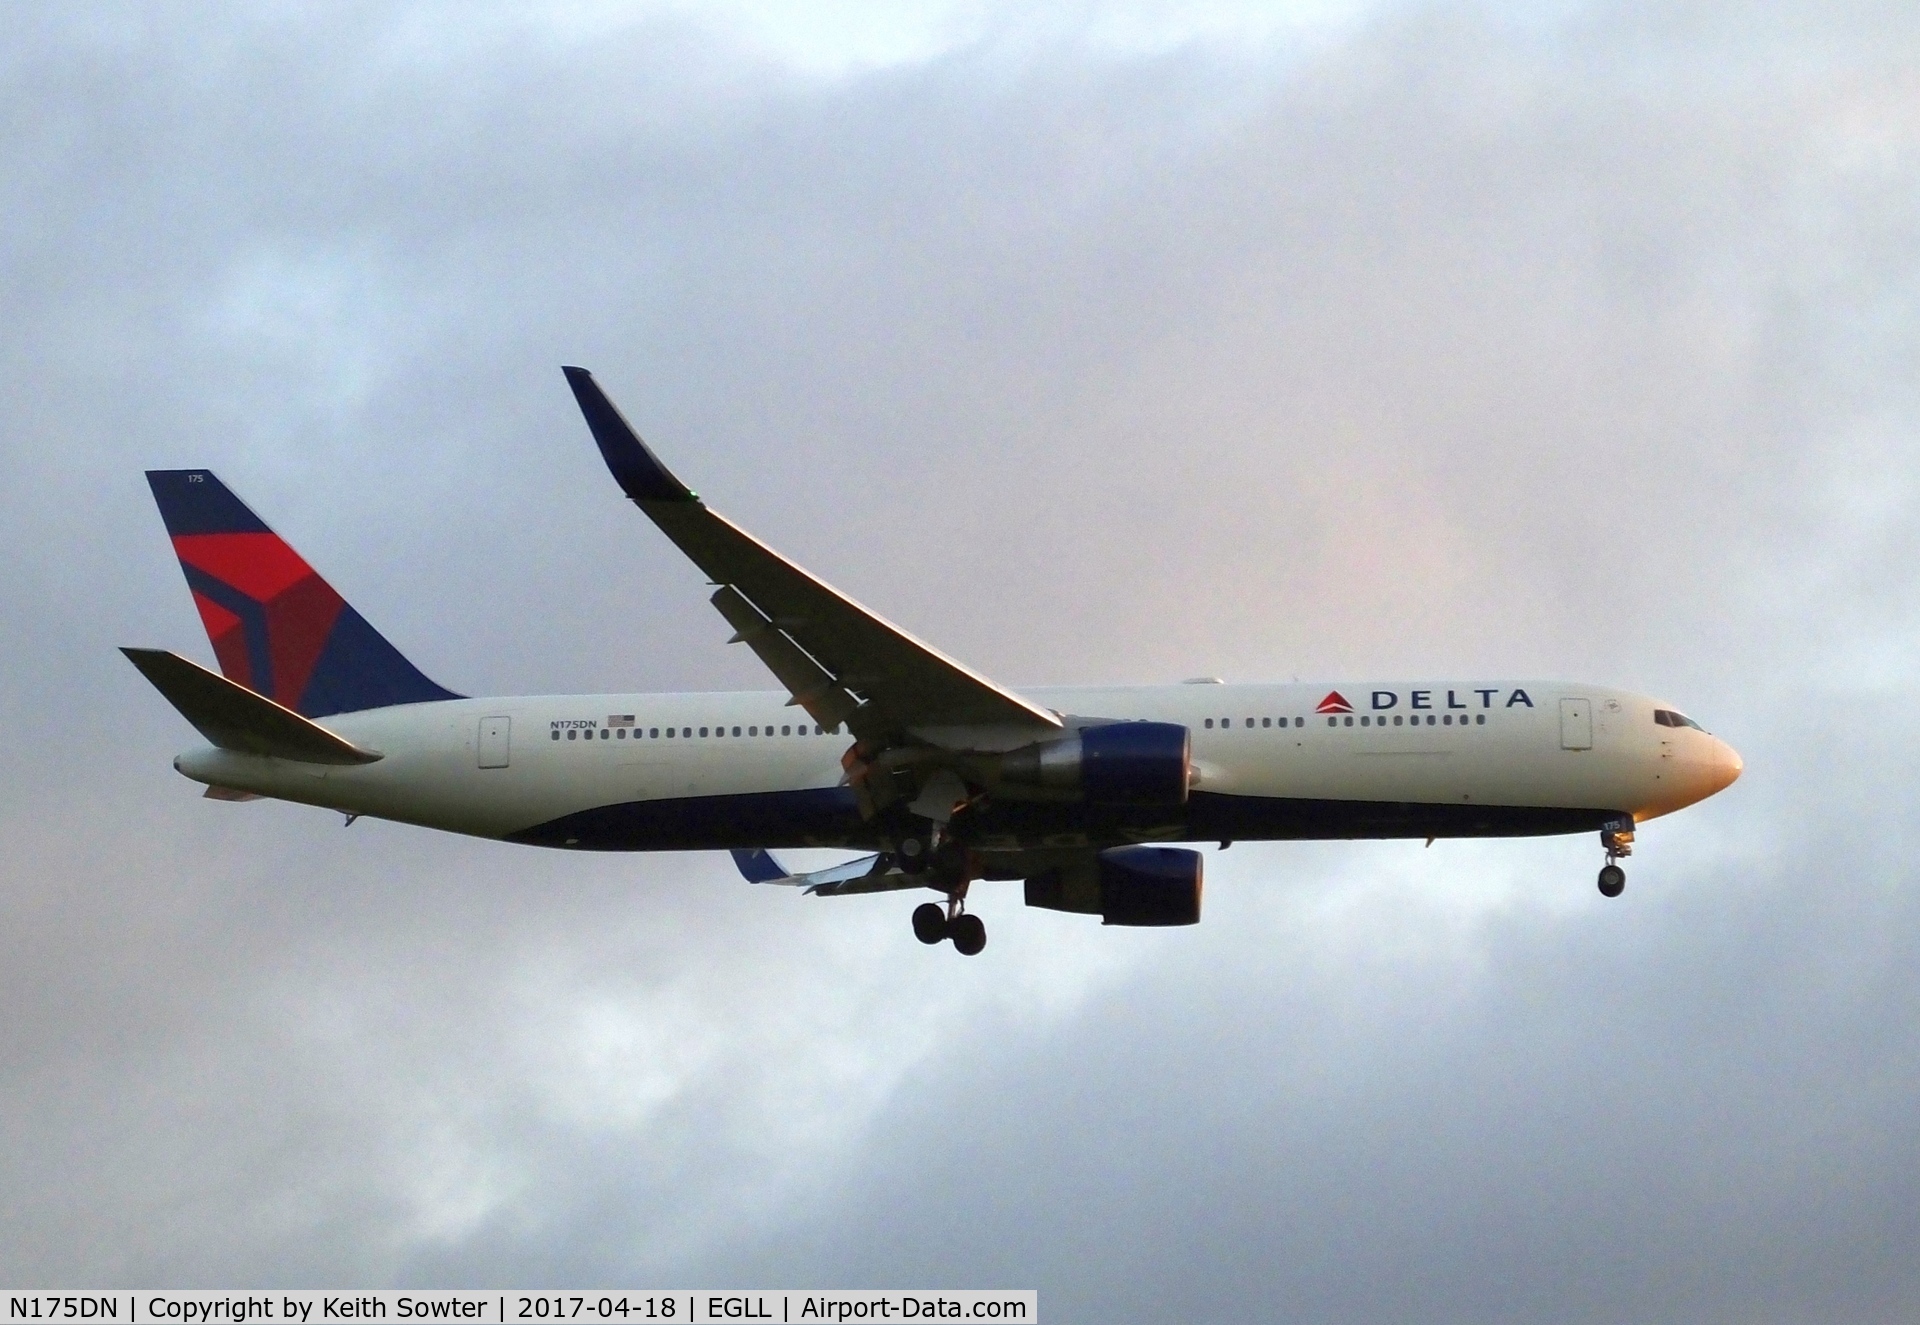 N175DN, 1990 Boeing 767-332 C/N 24803, Short finals to land Heathrow 09L